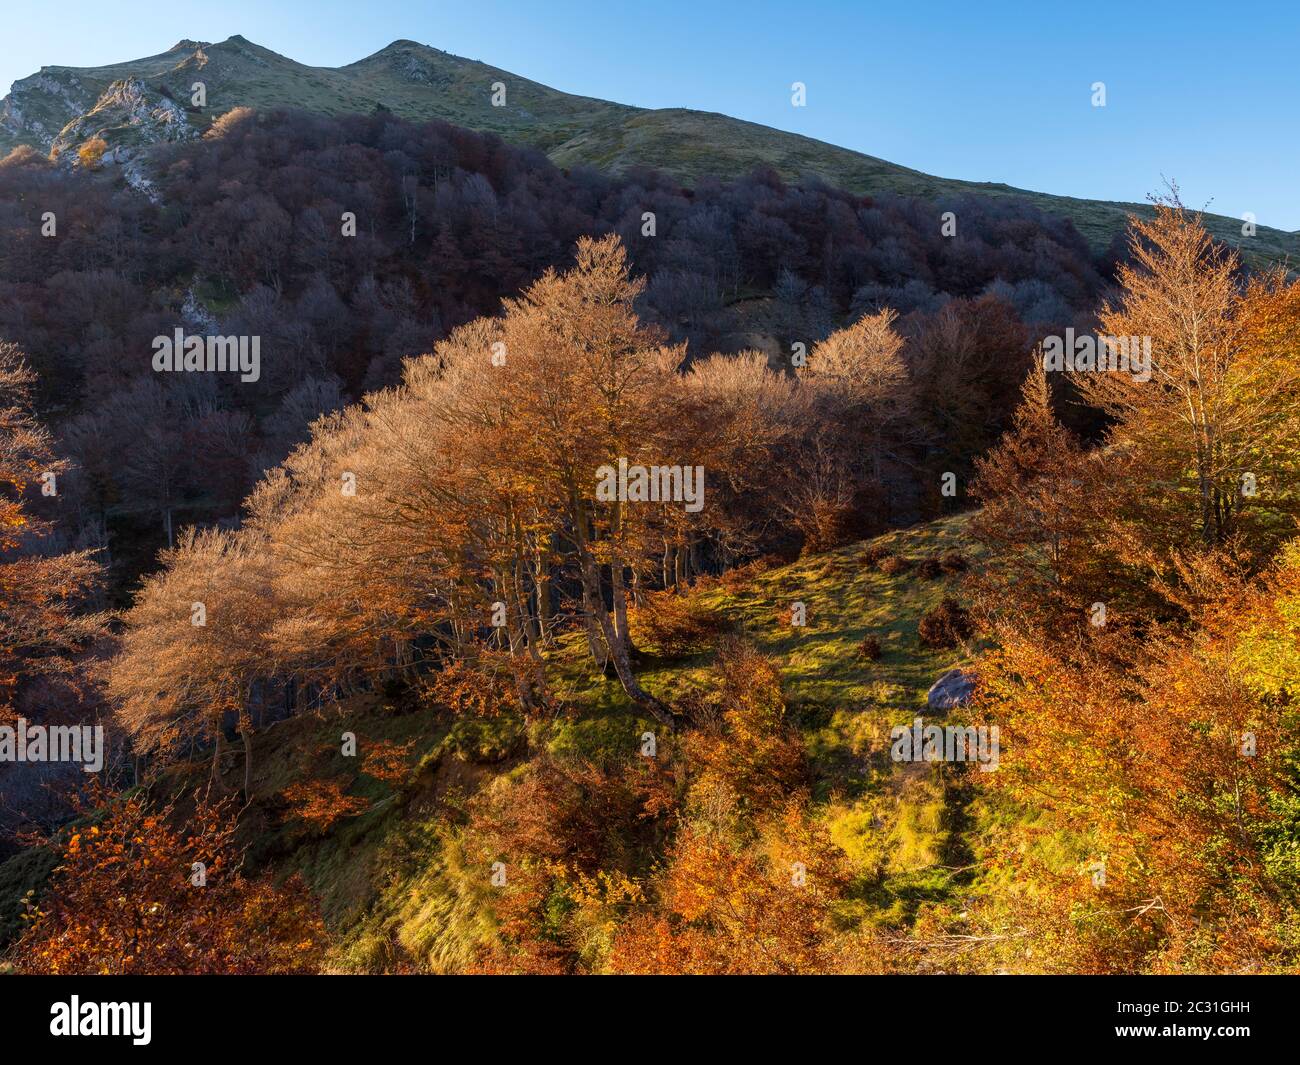 Paysage pittoresque avec forêt, Iraty, pays Basque, Pyrénées-Atlantique, France Banque D'Images